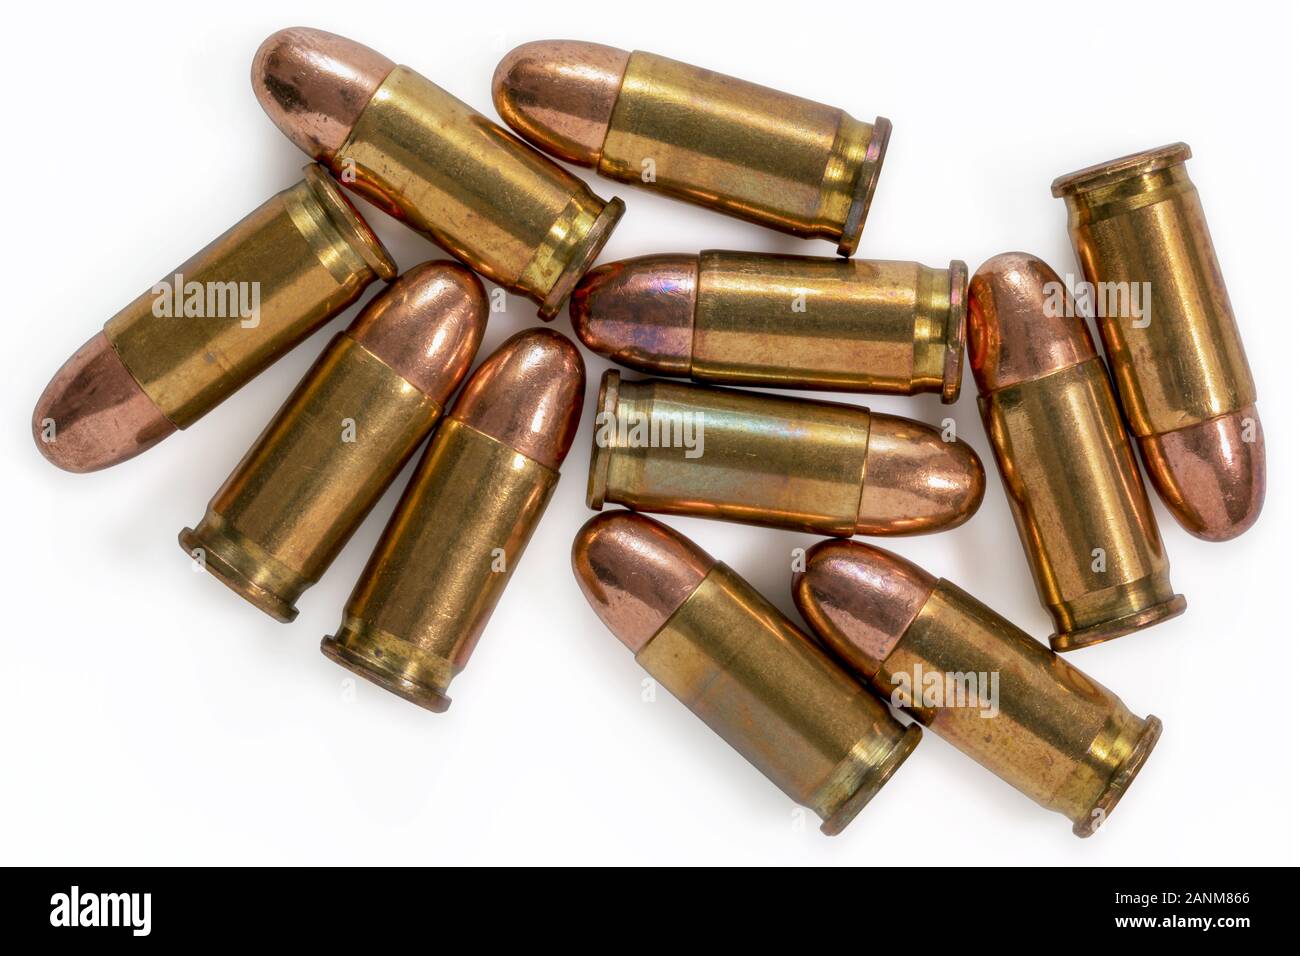 Stapel von 9 mm Kugeln auf einem weißen Hintergrund. Bild Stockfoto